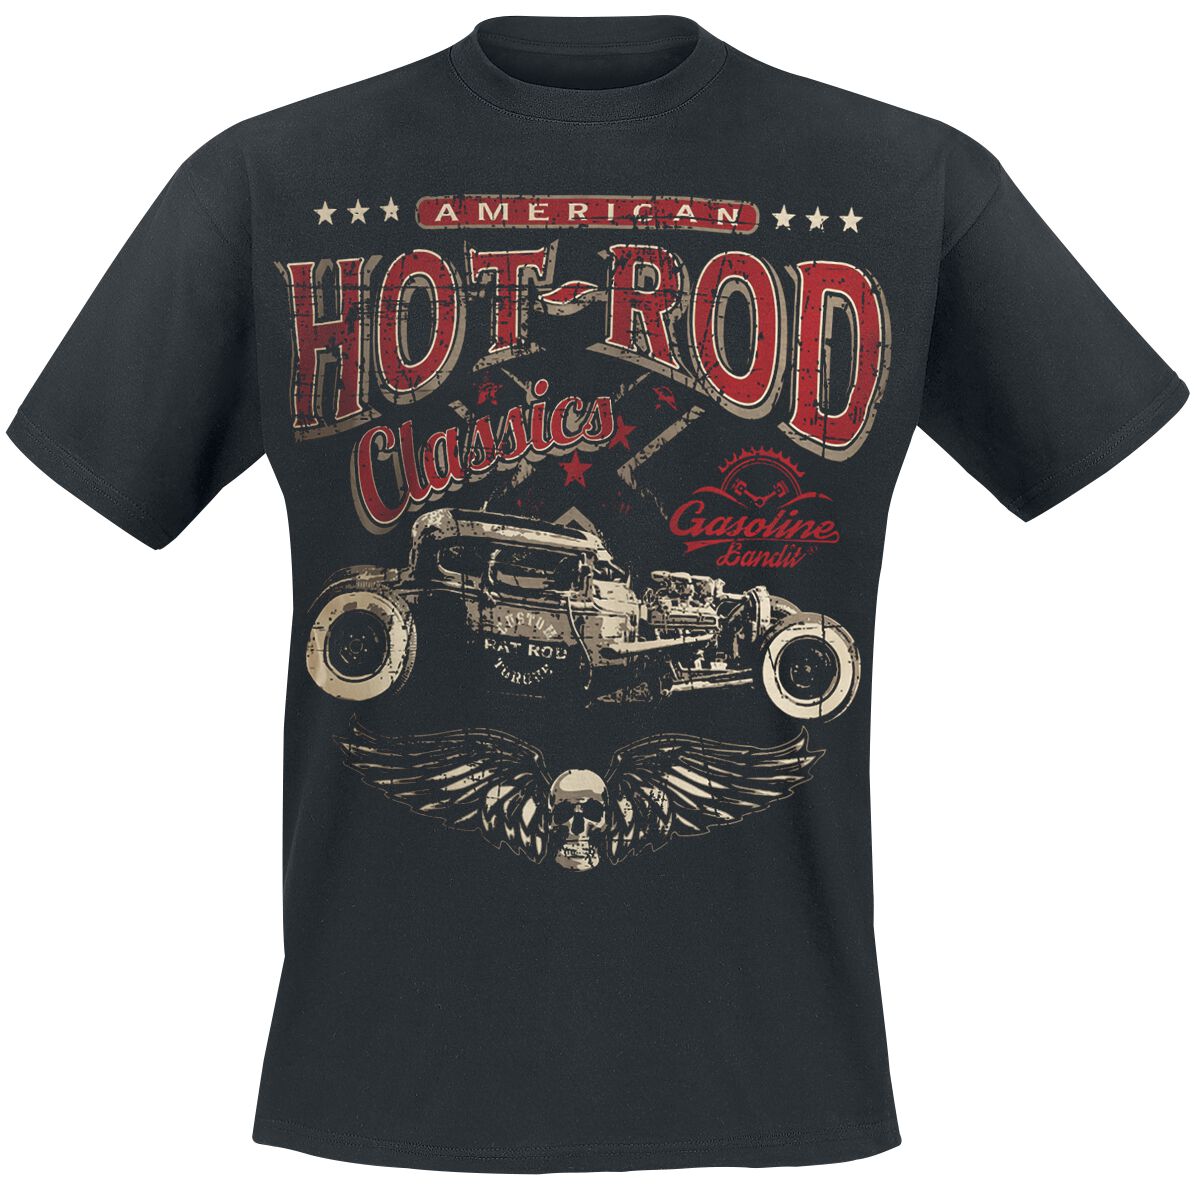 Gasoline Bandit - Rockabilly T-Shirt - Hot Rod Classics - S bis 3XL - für Männer - Größe M - schwarz